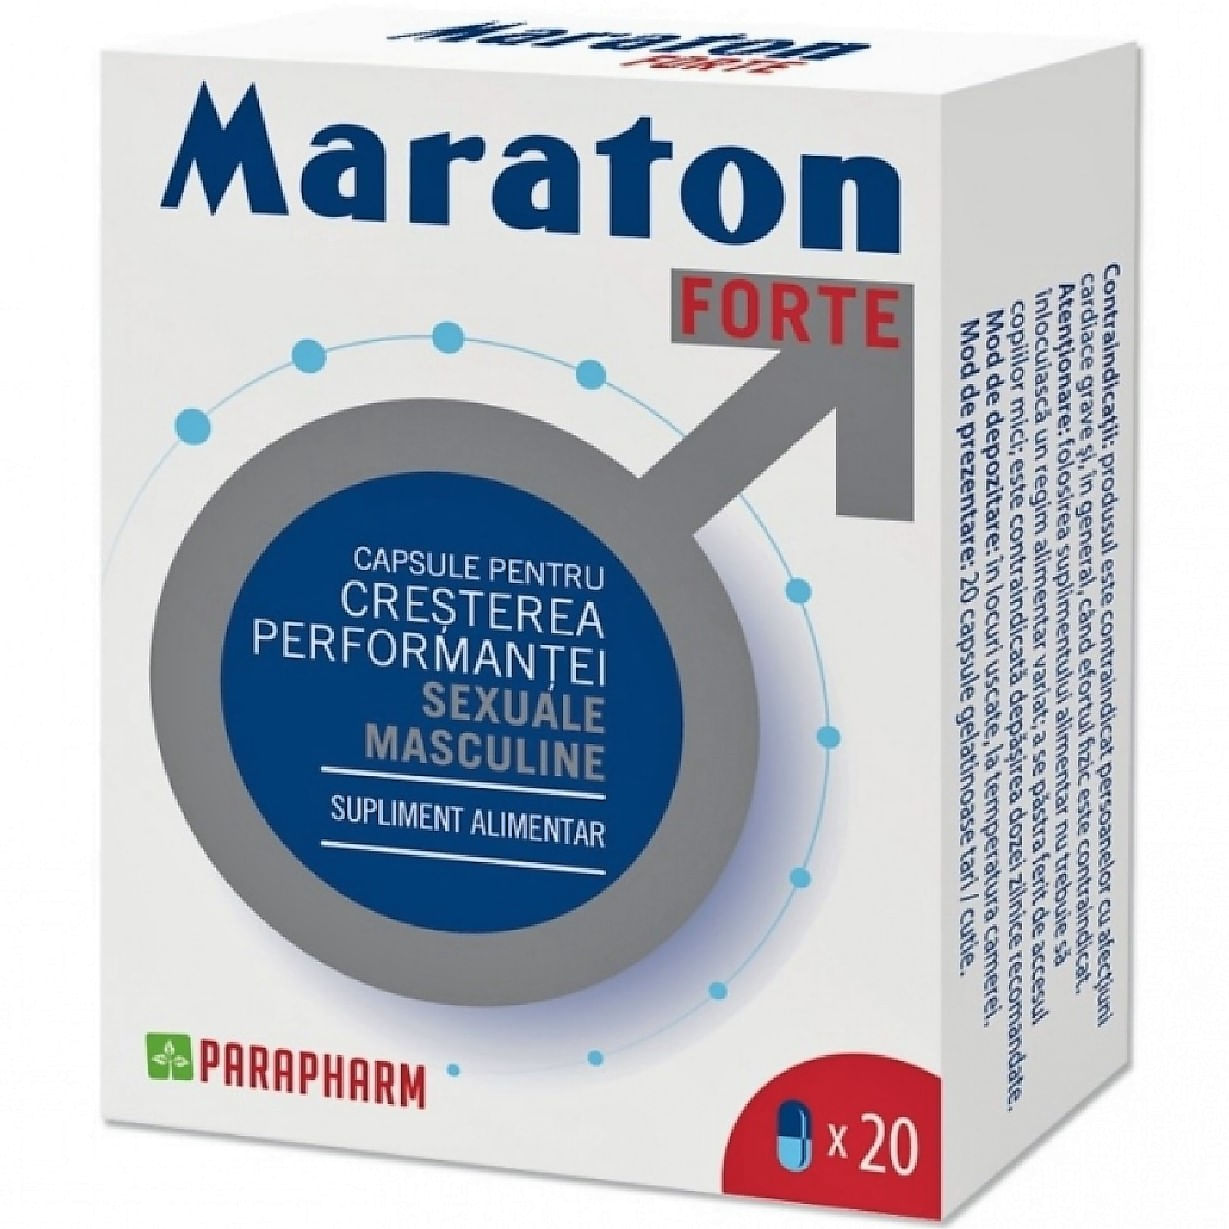 Capsule potenta Maraton Forte original Parapharm, 20 tablete, Quantum Pharm